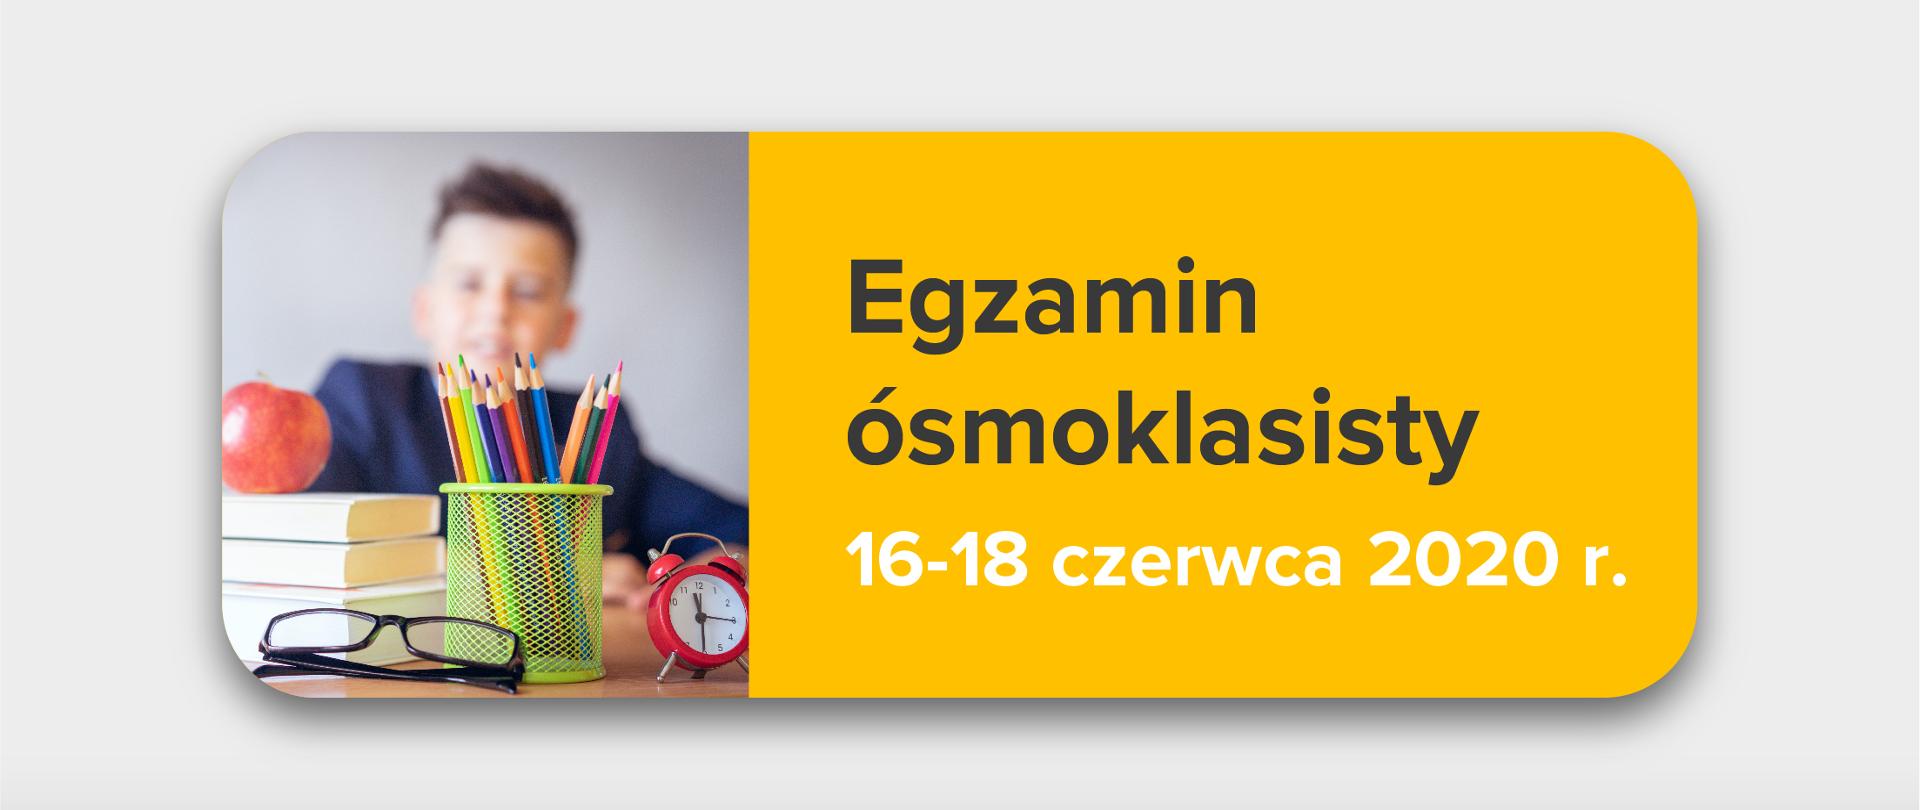 Jasnoszare tło, zdjęcie przyborów szkolnych po lewo, tekst po prawej stronie na żółtym tle:
"Egzamin ósmoklasisty 16-18 czerwca 2020 r."